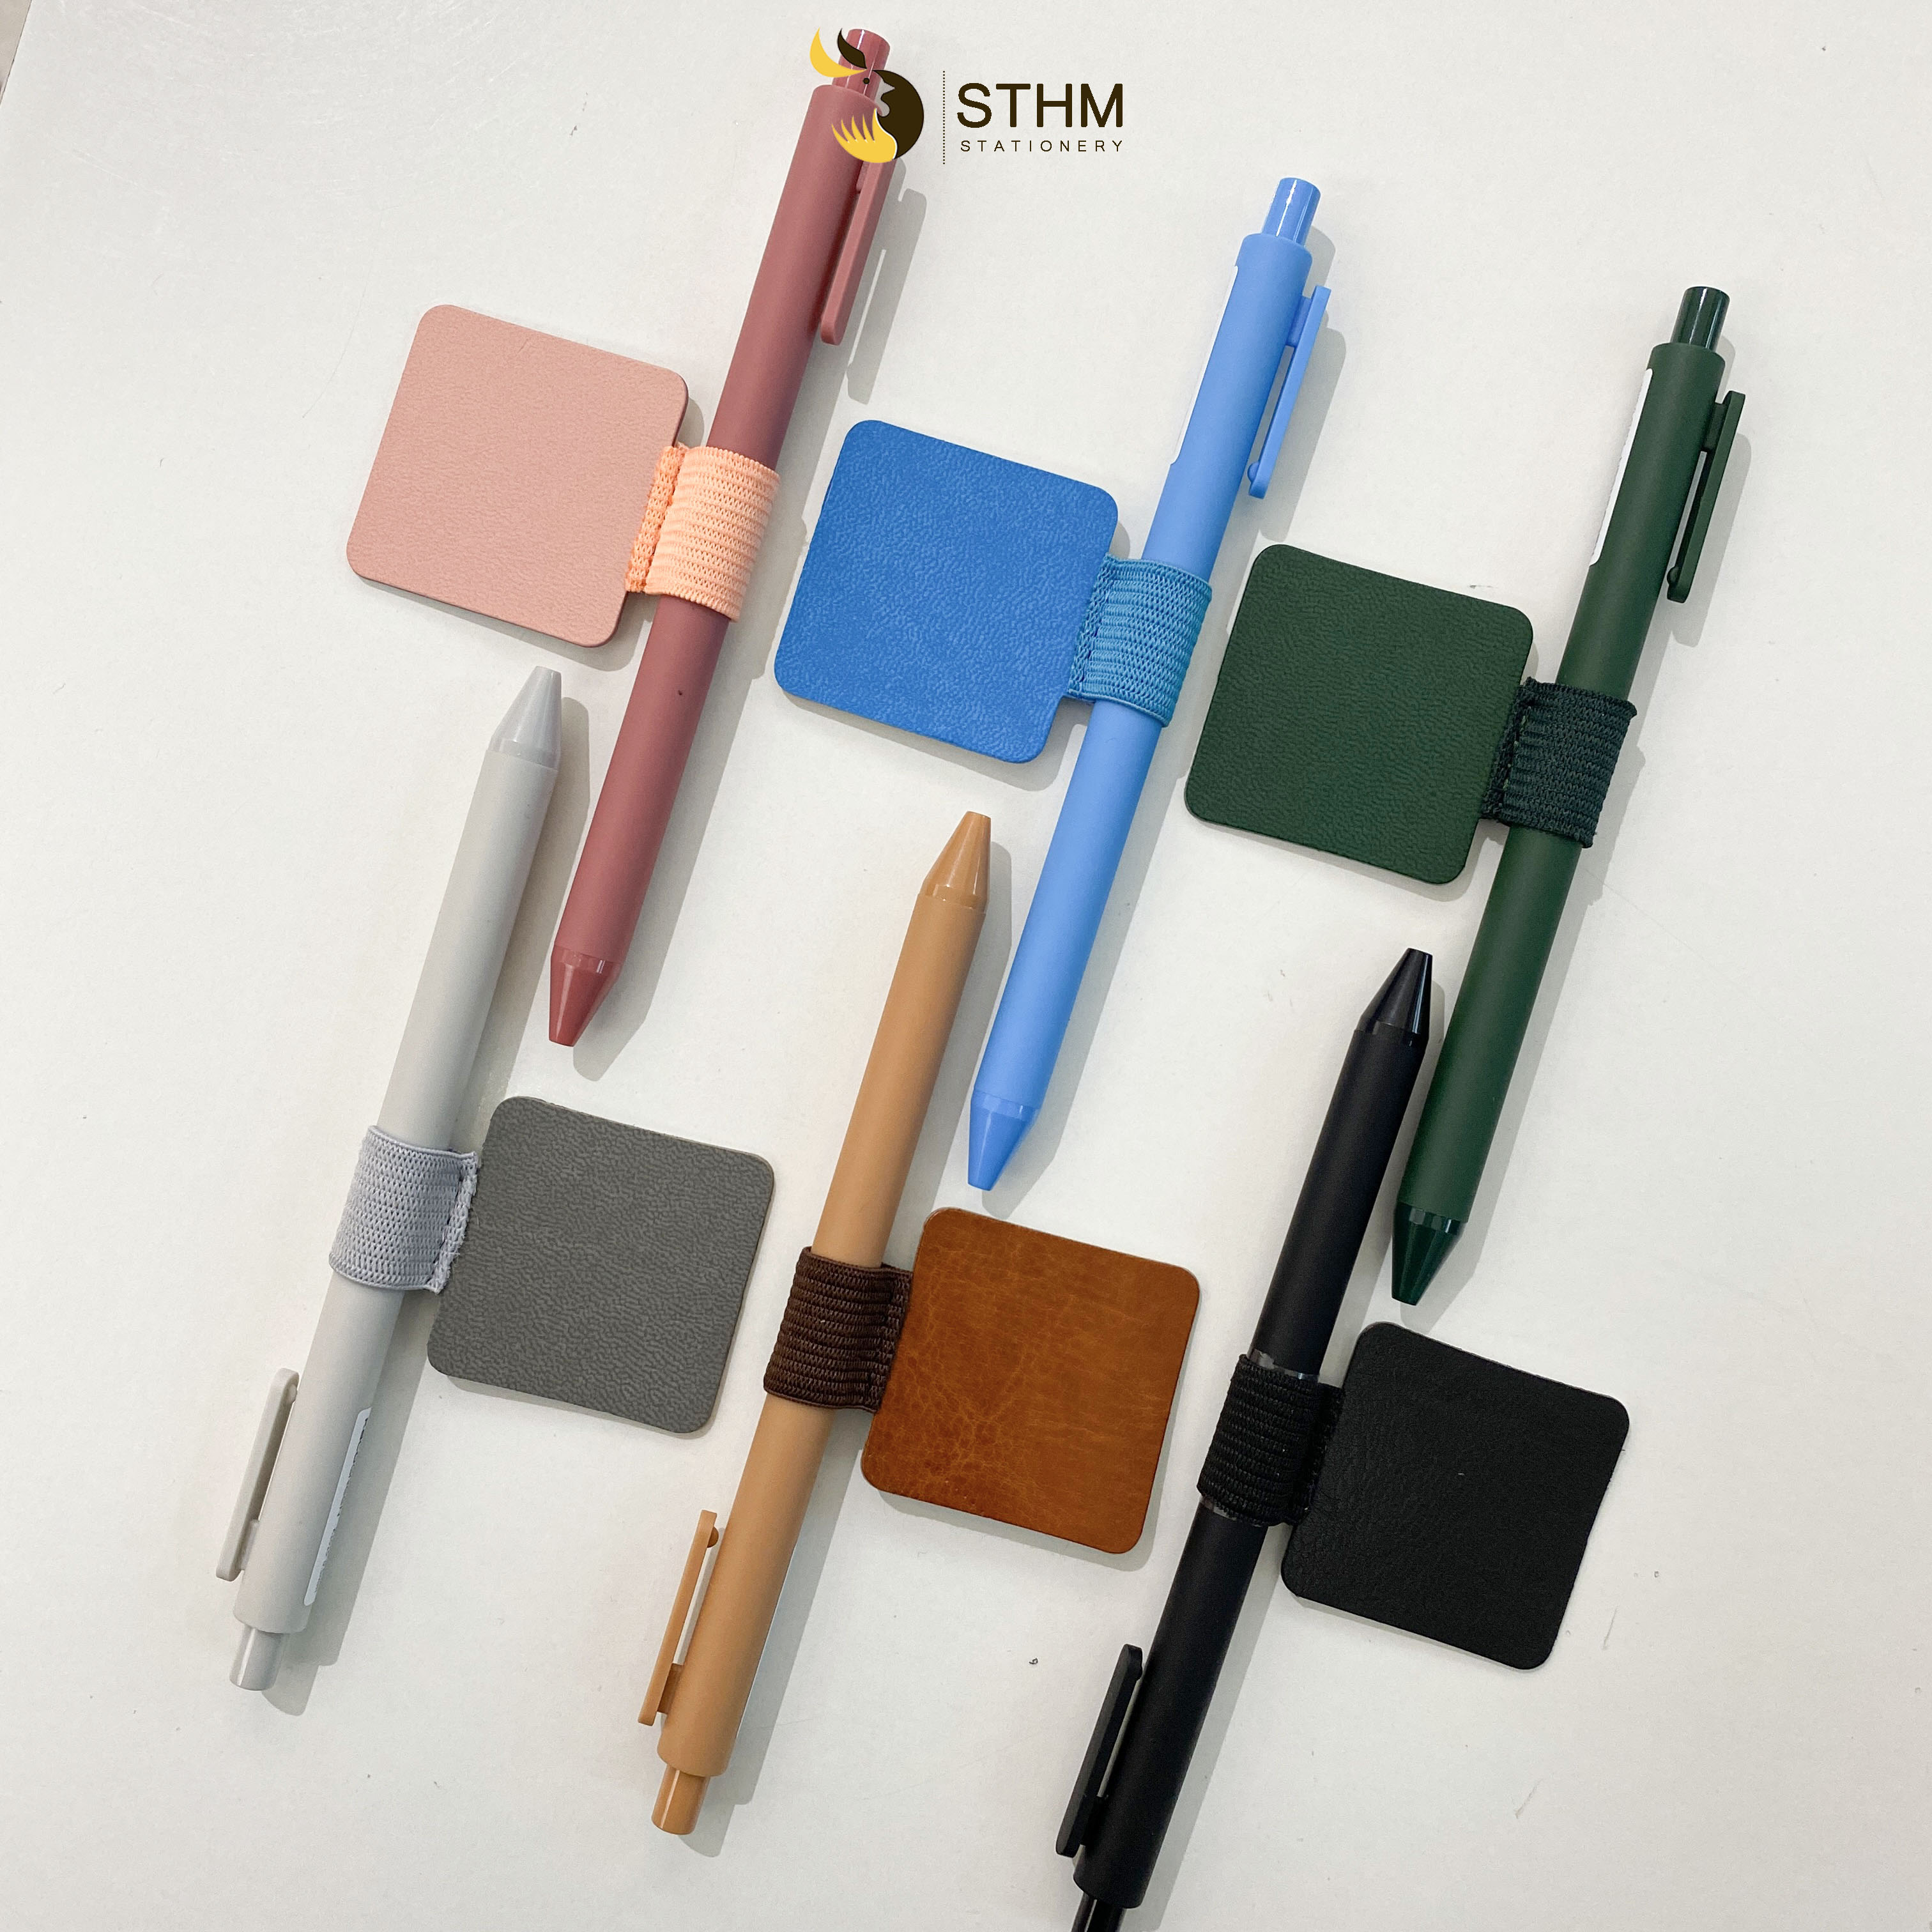 [STHM stationery] - Miếng dán gài bút cho sổ tay - dùng cho tất cả loại sổ tay